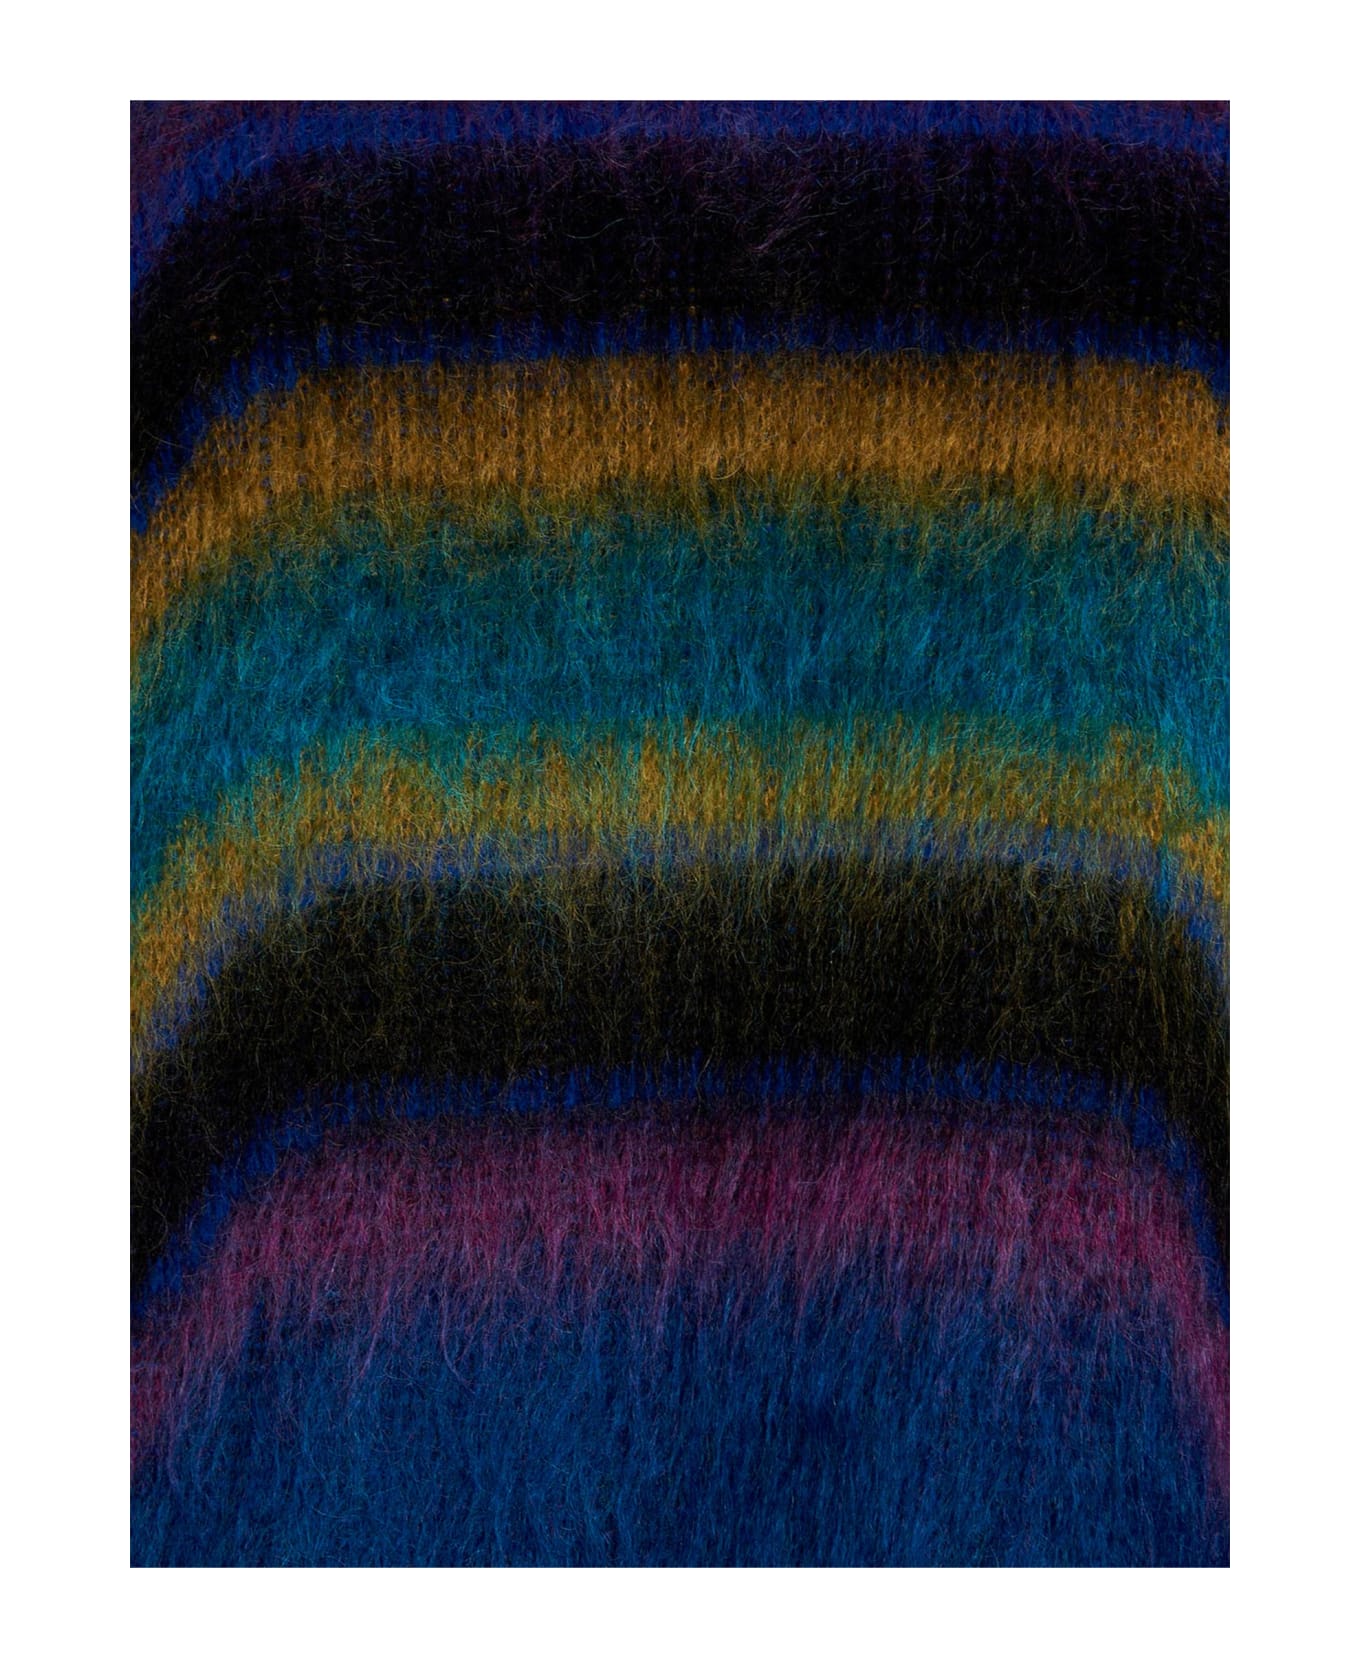 Avril8790 'skateboard' Sweater - Multicolor ニットウェア